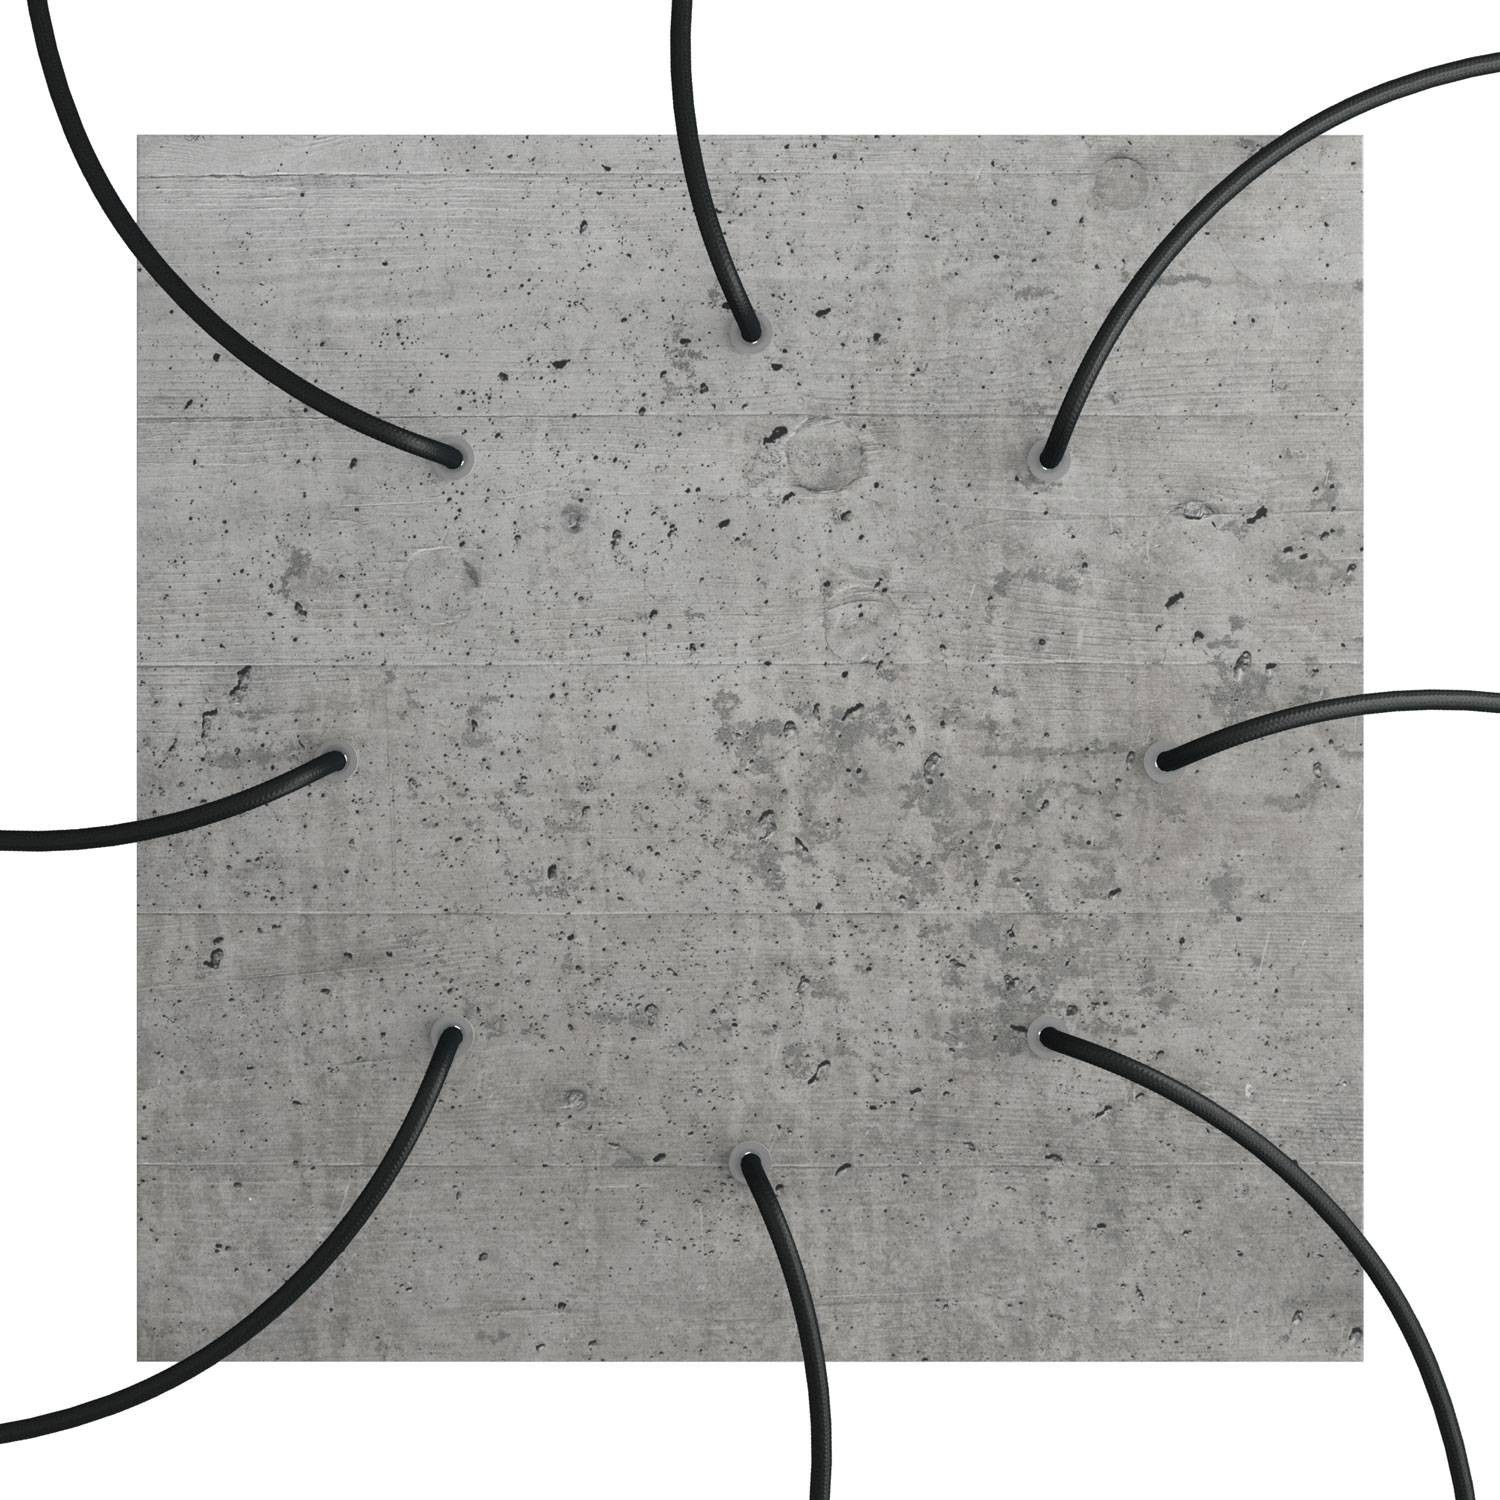 Quadratisches XXL 8-Loch und 4 Seitenlöchern Lampenbaldachin, Rose-One-Abdeckung, 400 mm